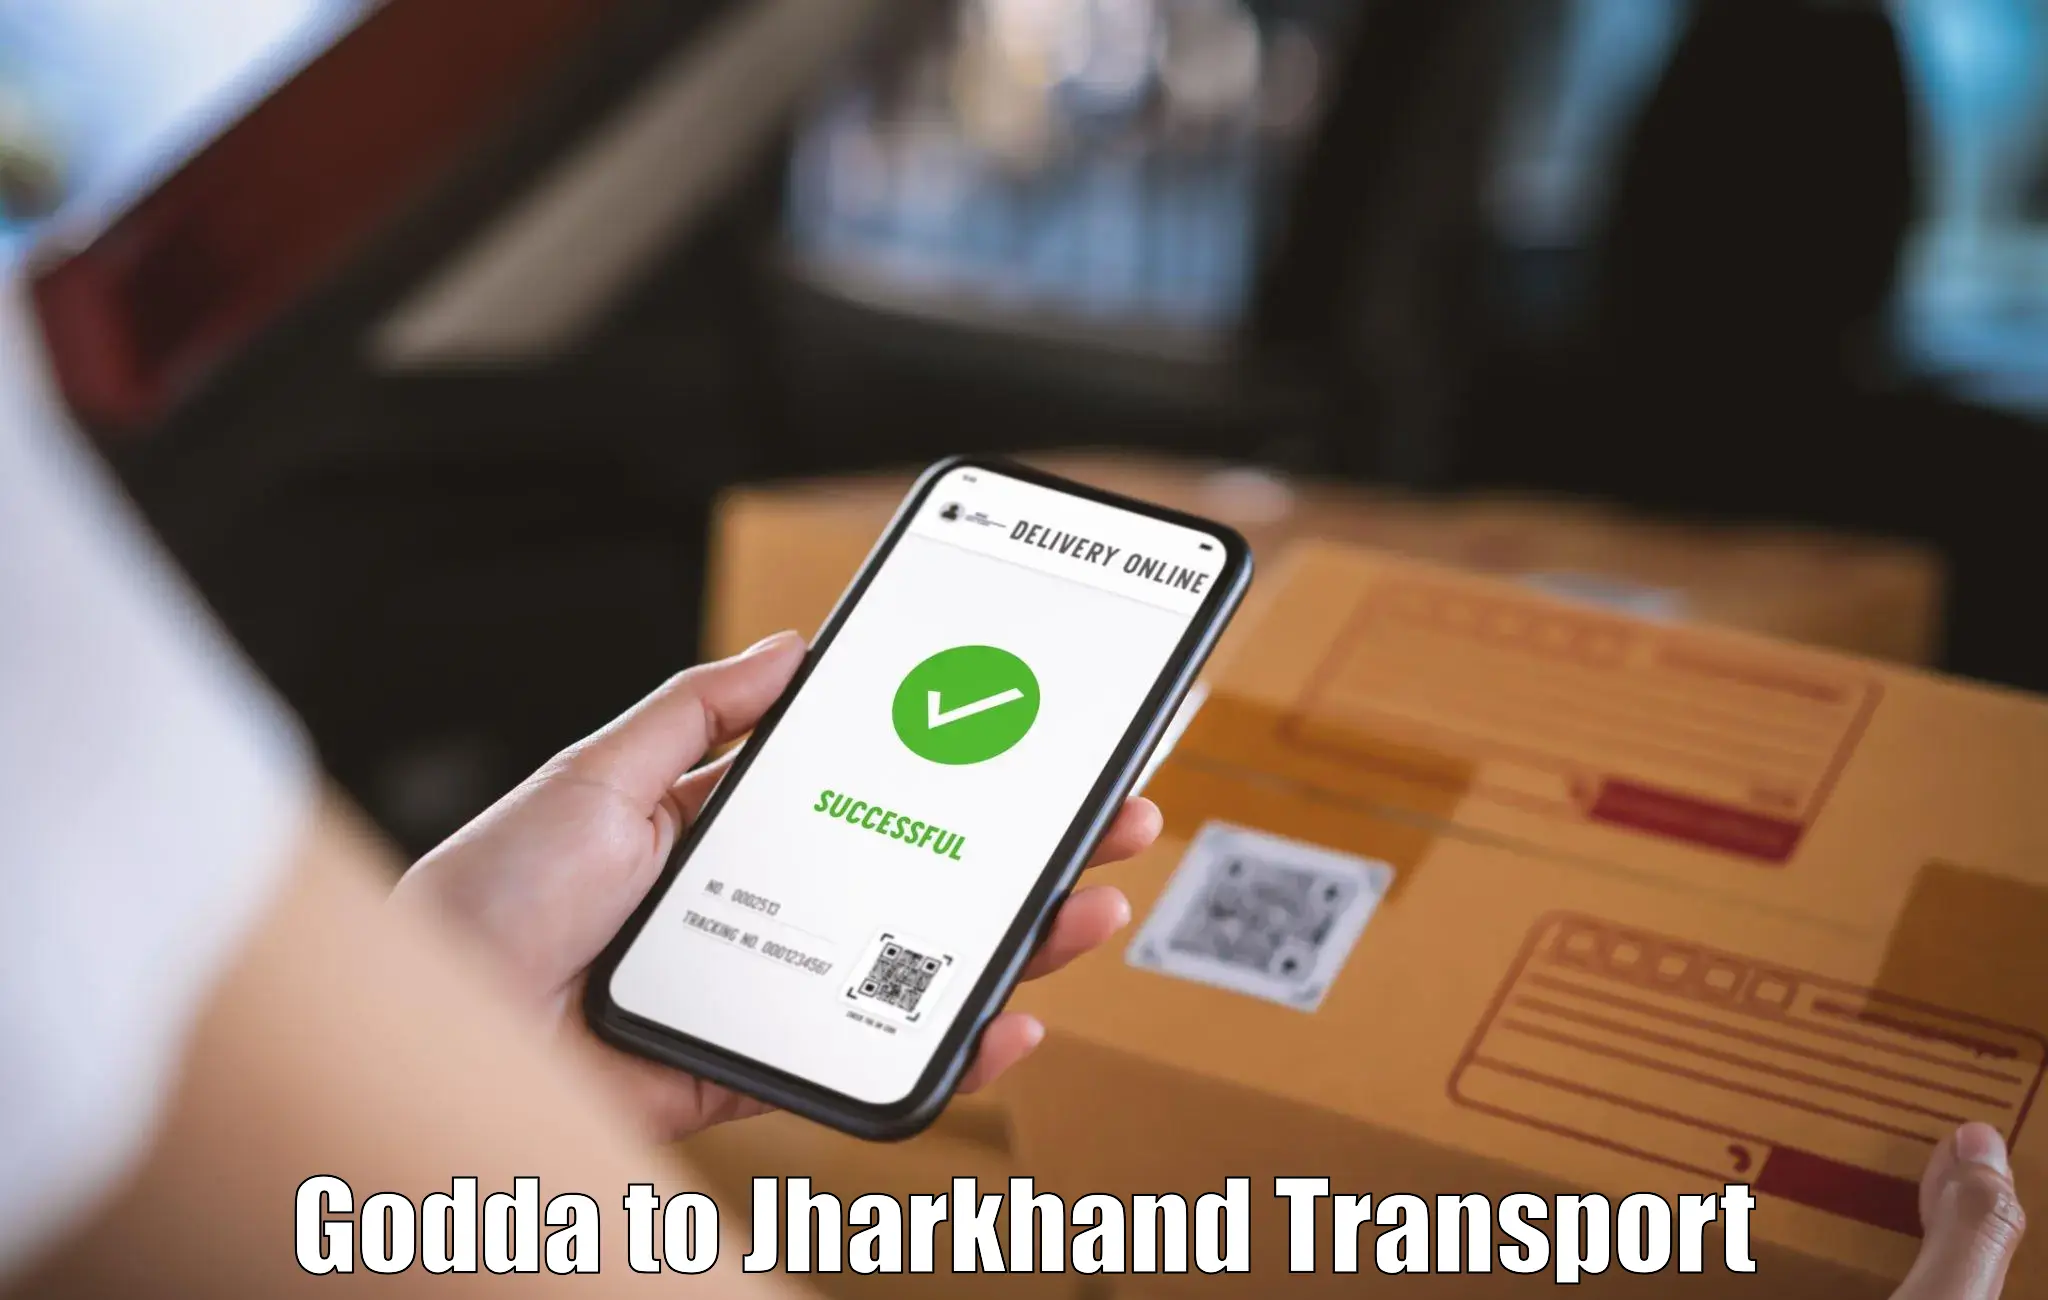 Shipping partner Godda to Adityapur